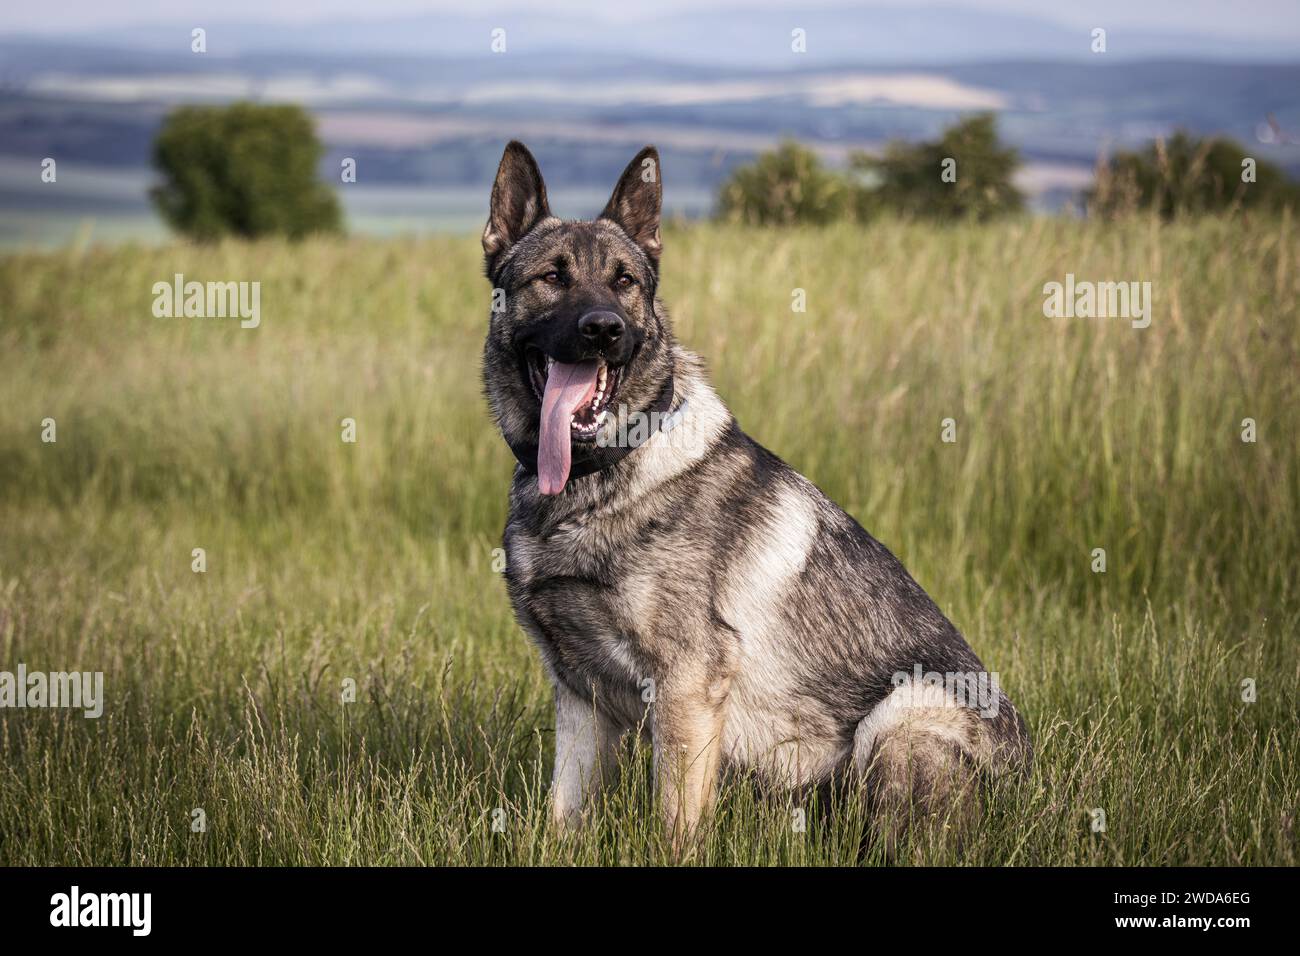 Cane pastore tedesco seduto in erba. Ritratto di cane di razza pura all'aperto Foto Stock